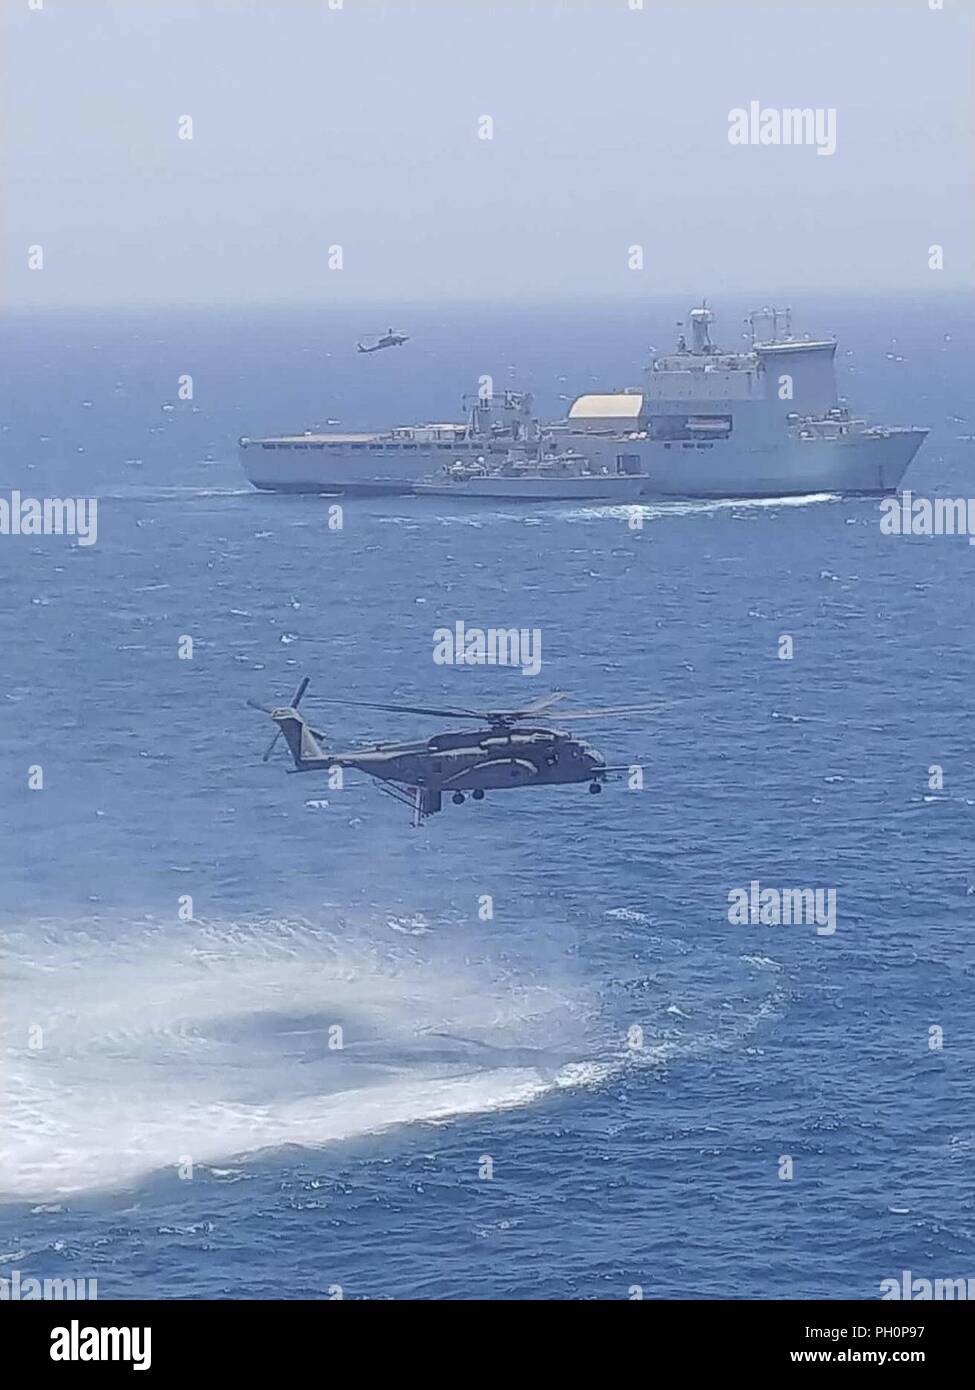 U.S. 5ÈME ZONE DES OPÉRATIONS DE LA FLOTTE (17 juin 2018) Un hélicoptère MH-53 Sea Dragon, attribué à 'la' Blackhawks de l'Escadron d'hélicoptères de la lutte contre les mines (HM), 15 téléskis un AQS-24B comme système de chasse aux mines destiné au chasseur de la Royal Navy HMS Middleton (M34) aux côtés de radeaux Royal Fleet Auxiliary landing ship dock de demandes La Baie de Cardigan (L3009) alors qu'un MH-60 Sea Hawk, affecté à l'Escadron d'hélicoptères de combat de la mer (HSC), repart avec 26 visiteurs distingués au cours de l'exercice de lutte contre les mines (MCMEX) 18-2. L'exercice bilatéral de coopération mutuelle, améliore les capacités de lutte contre les mines et configurations spécialement conçues Banque D'Images